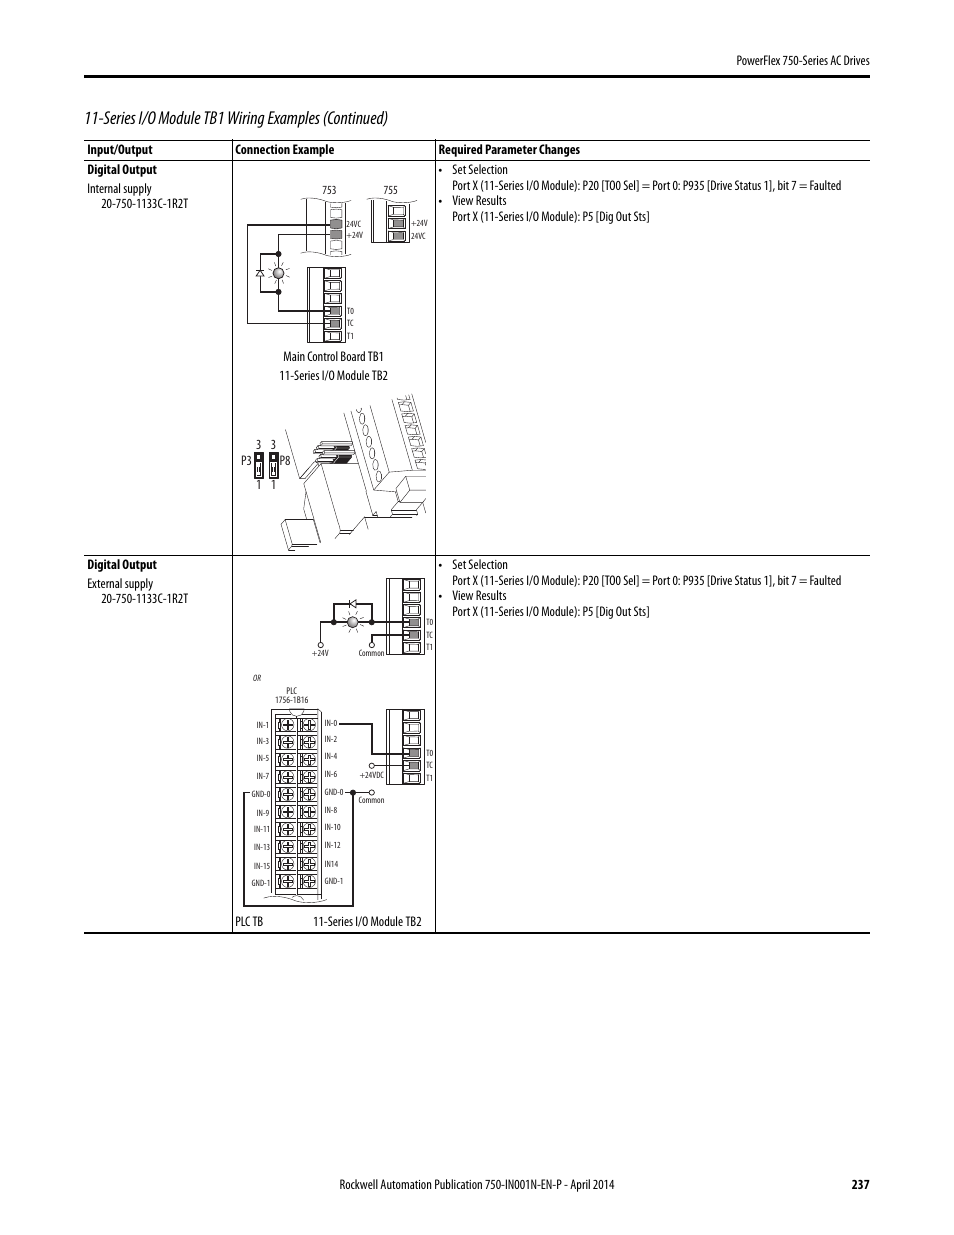 Allen Bradley Vfd Powerflex 753 Wiring Diagram